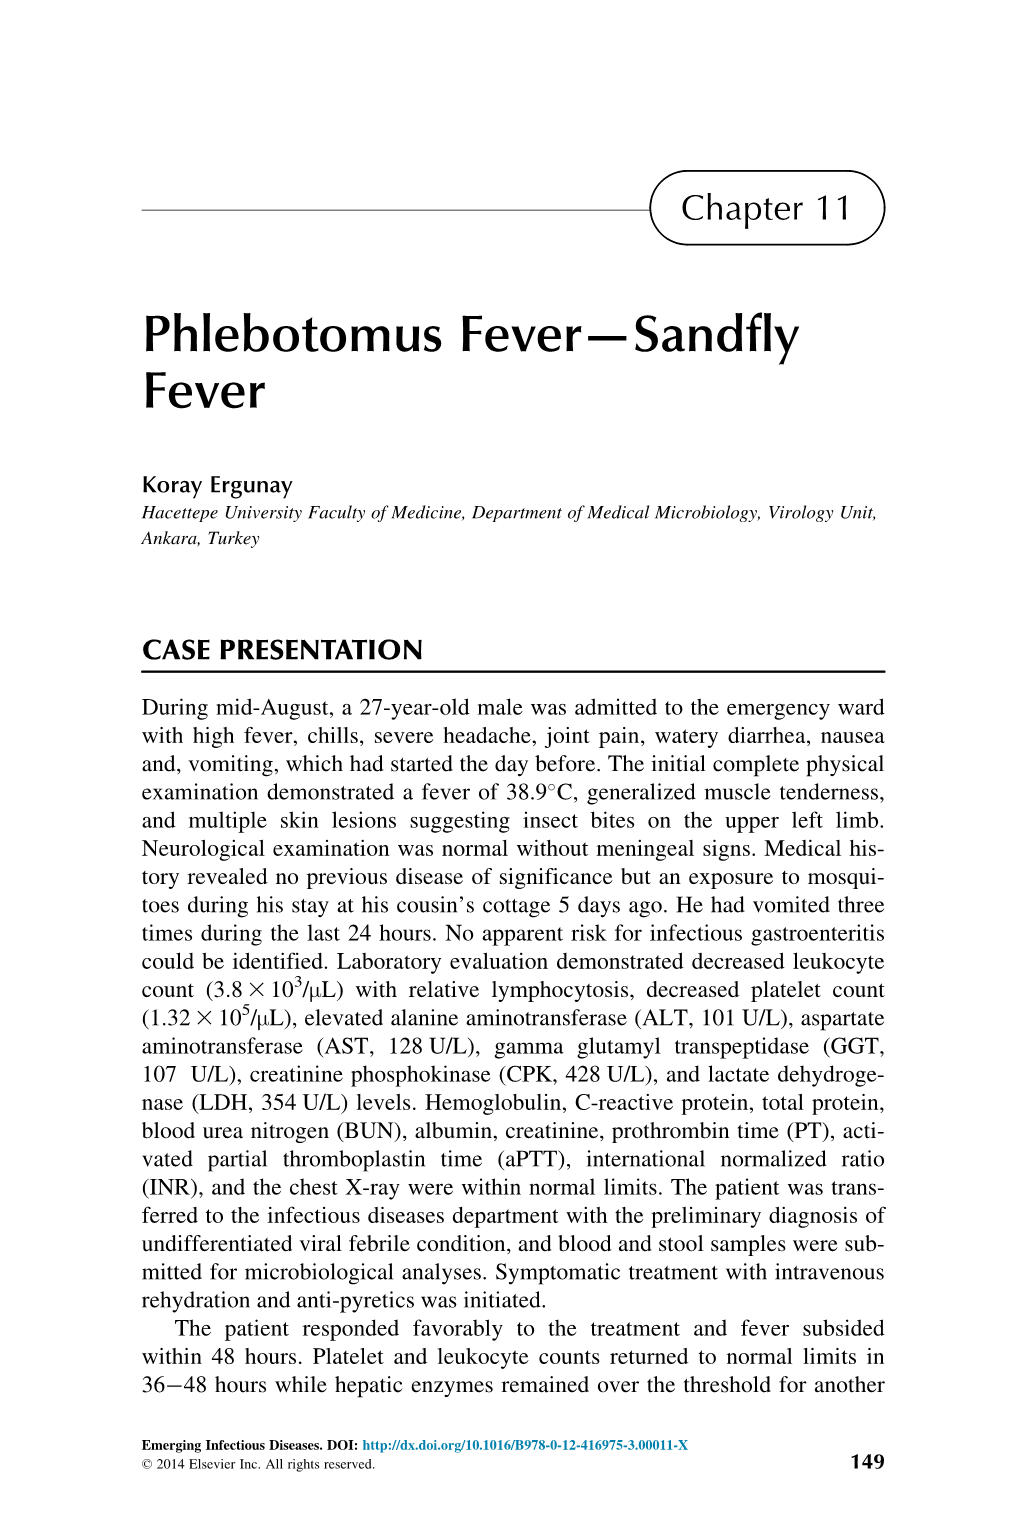 Chapter 11. Phlebotomus Fever—Sandfly Fever